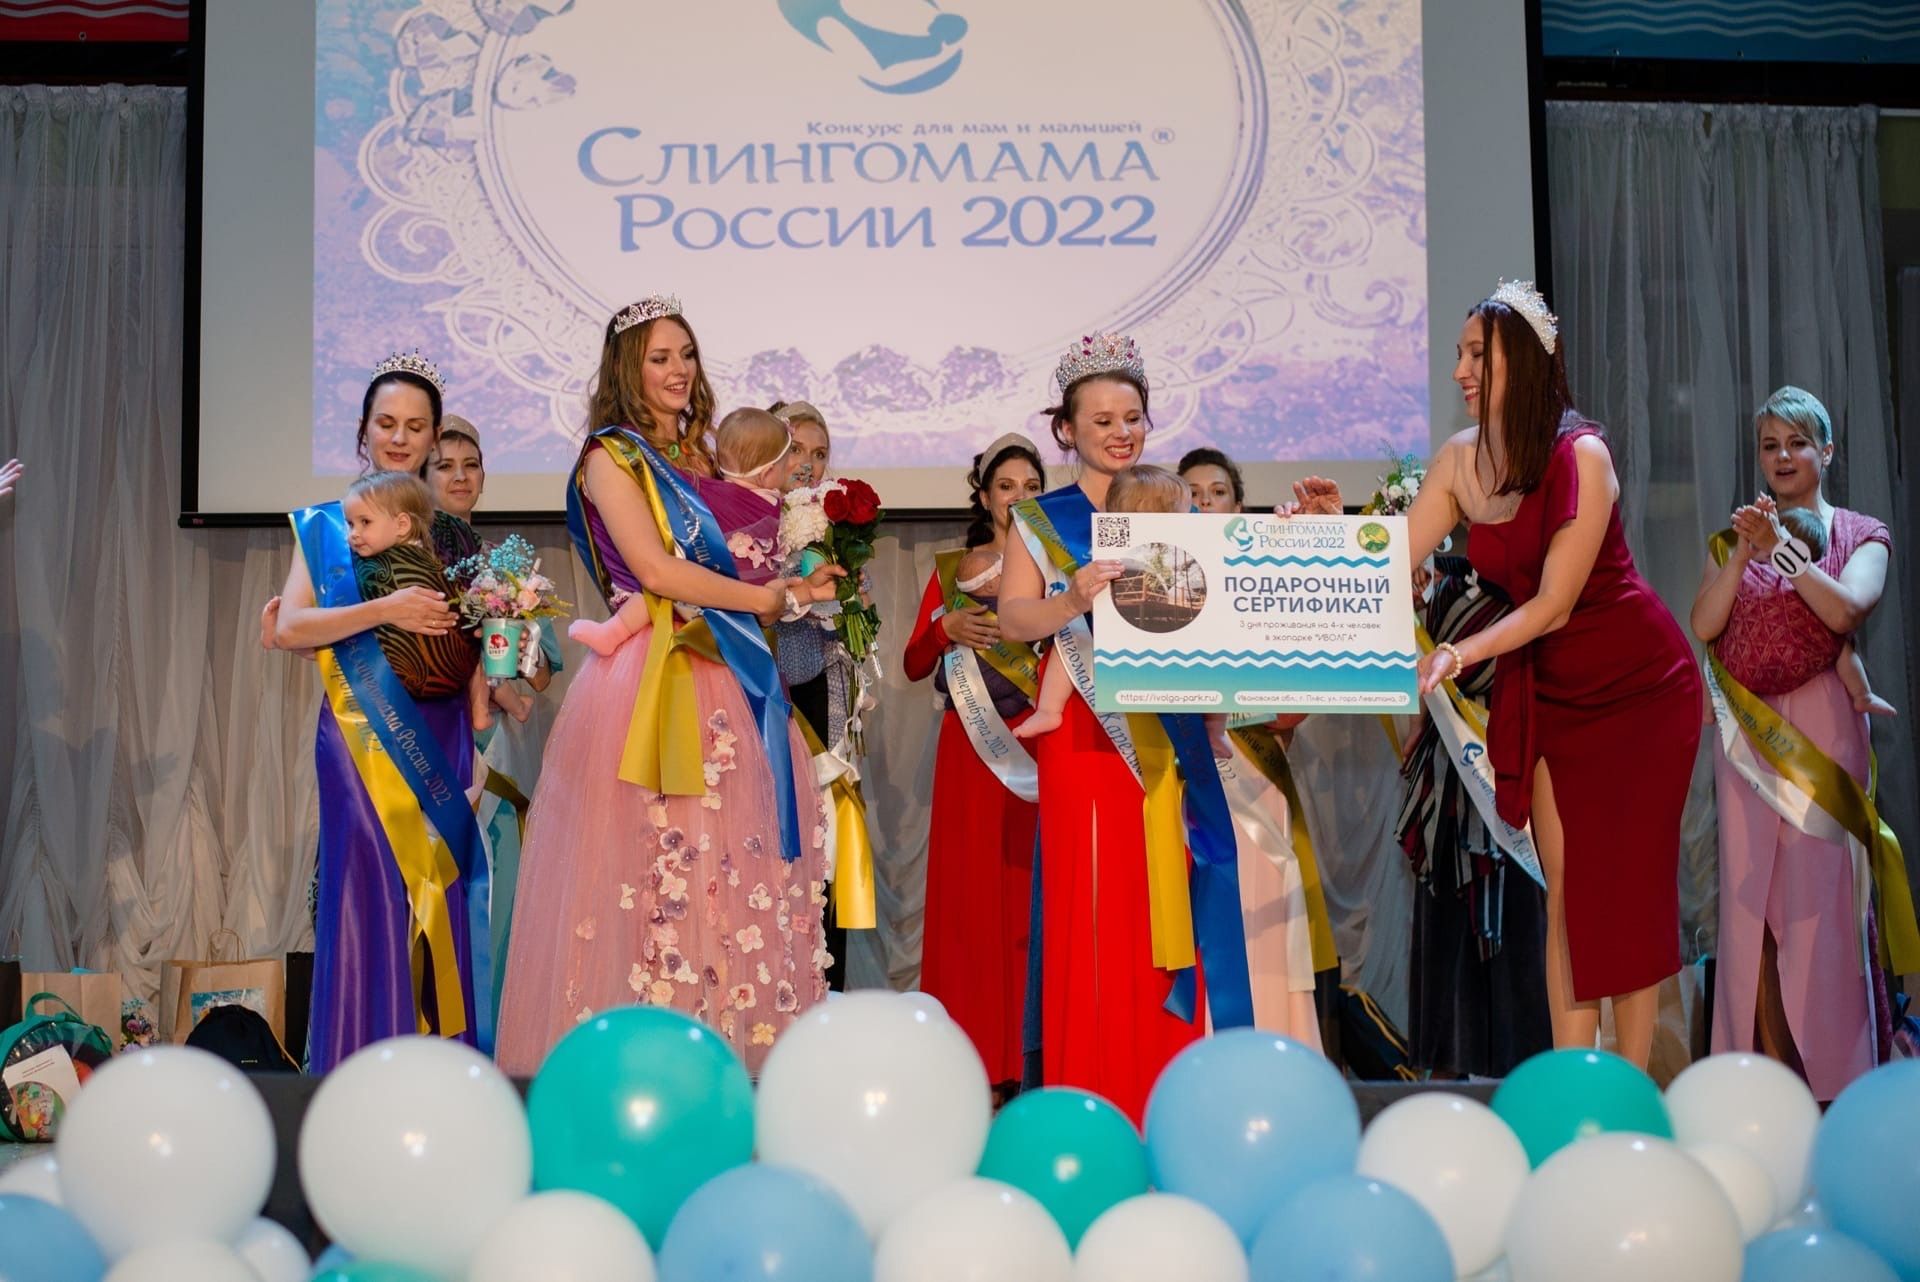 Петрозаводчанка победила в конкурсе «Слингомама России»